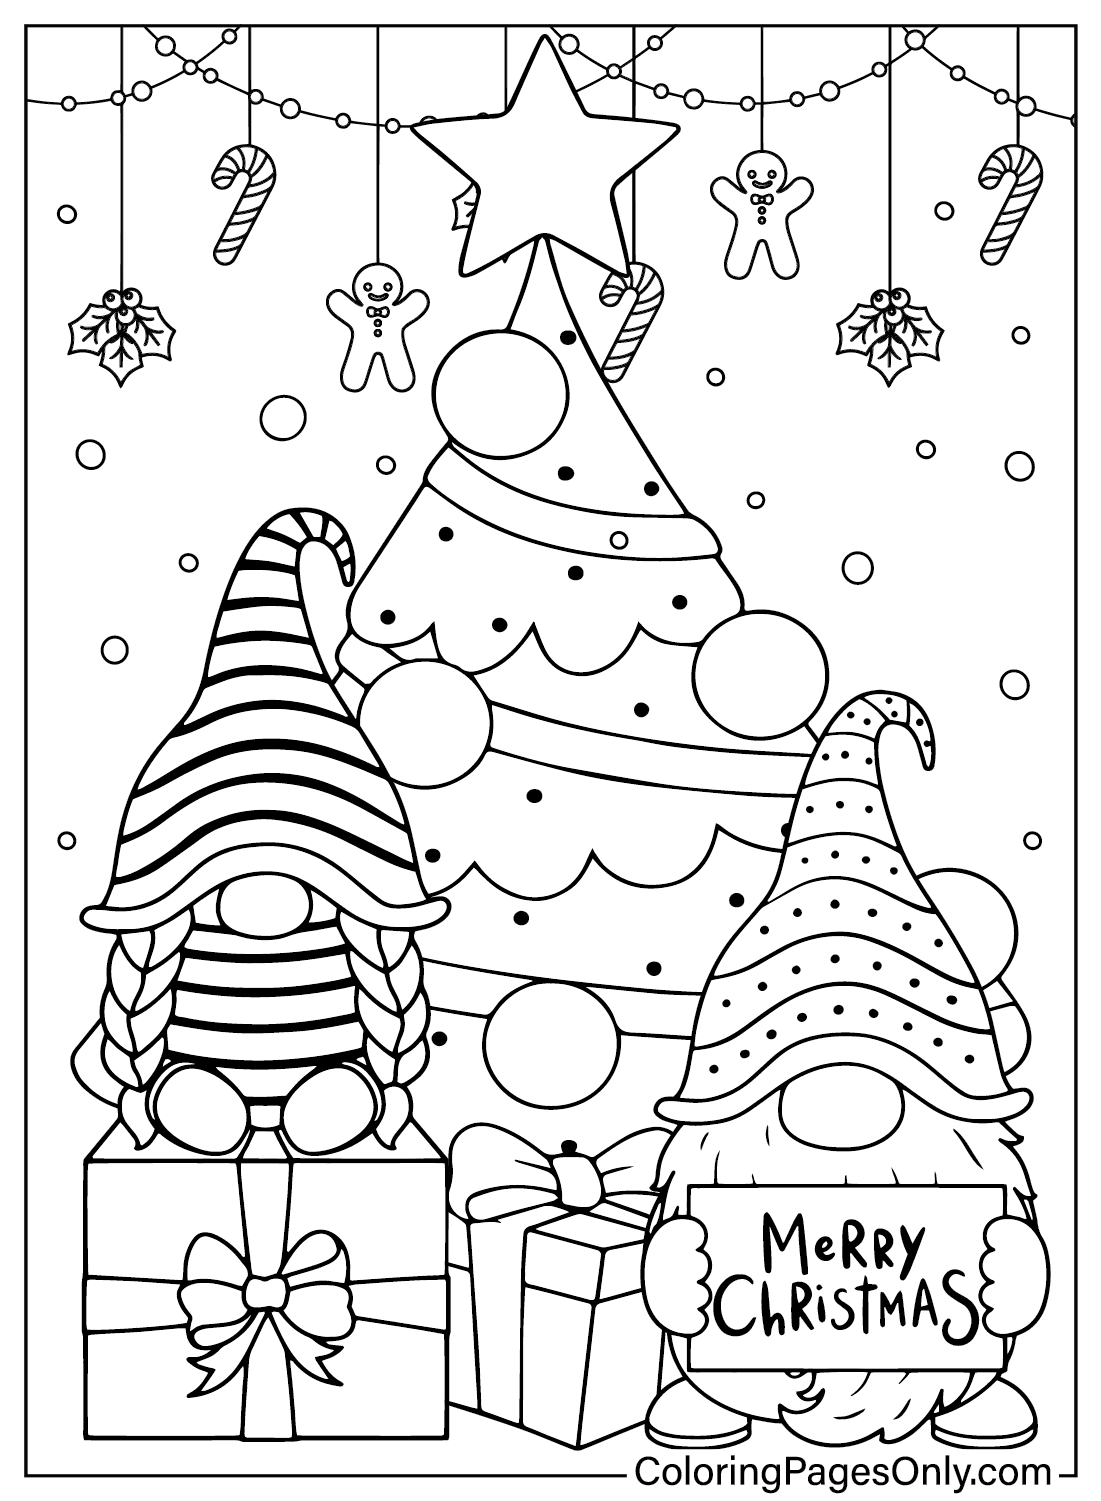 Página para colorir grátis do Gnomo de Natal do Gnome